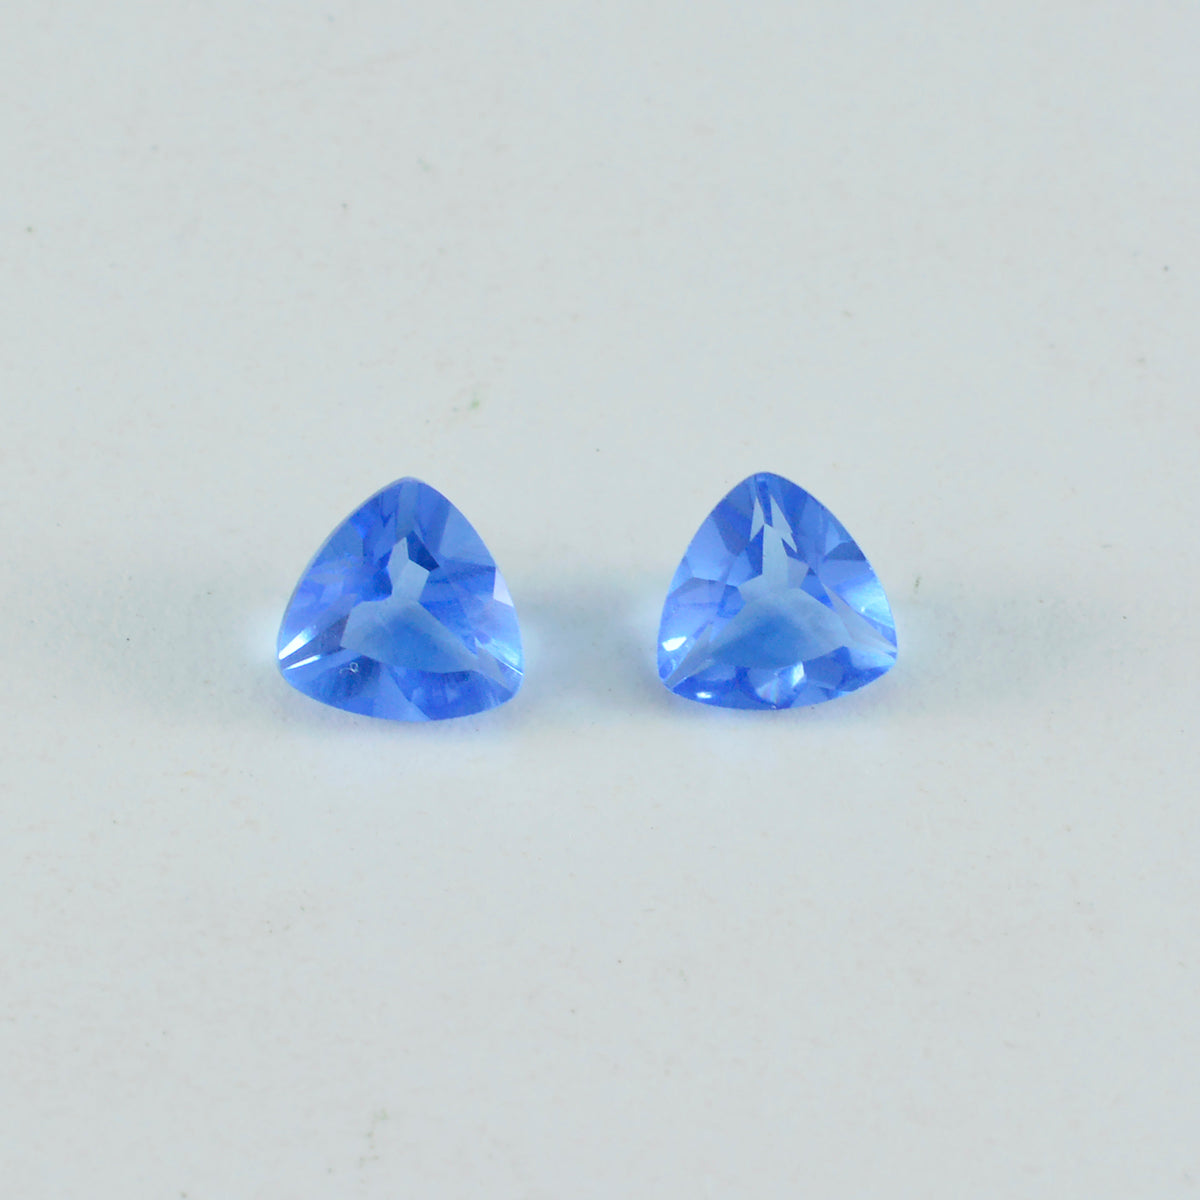 Riyogems 1 Stück blauer Saphir, CZ, facettiert, 11 x 11 mm, Billionenform, fantastischer Qualitätsstein